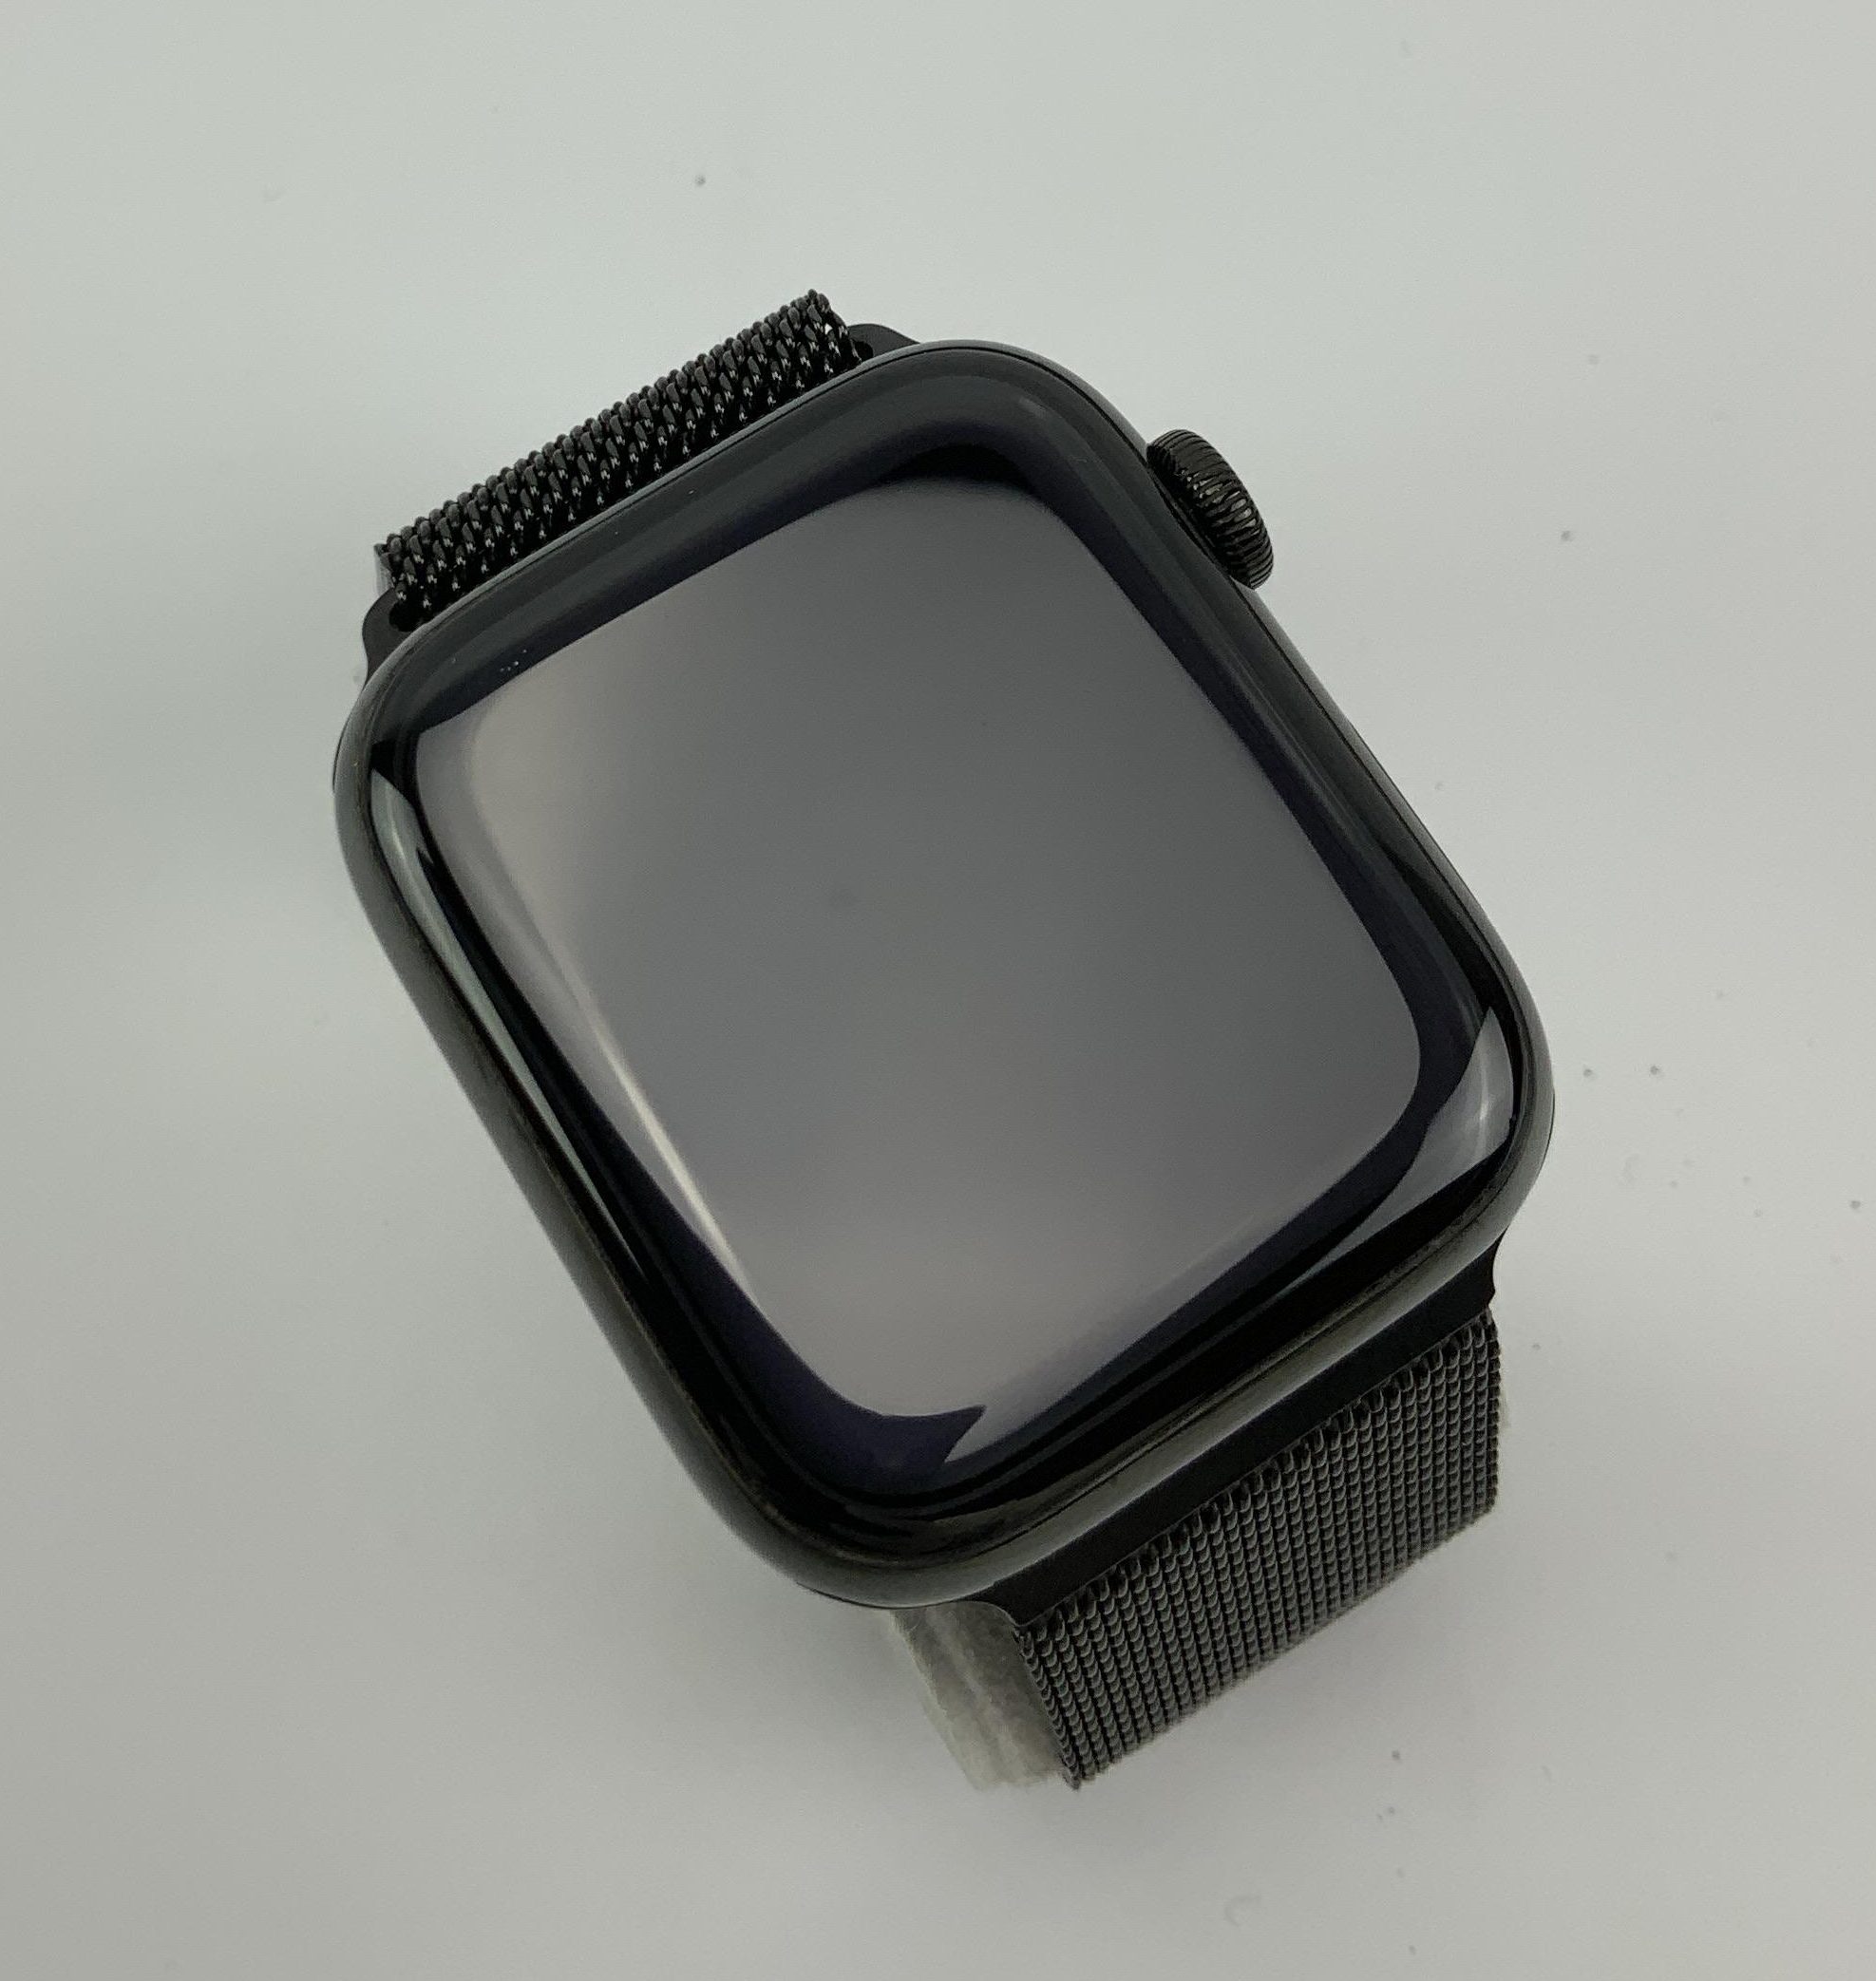 Watch Series 4 Steel Cellular (44mm), Space Black, Space Black Milanese Loop, Bild 3